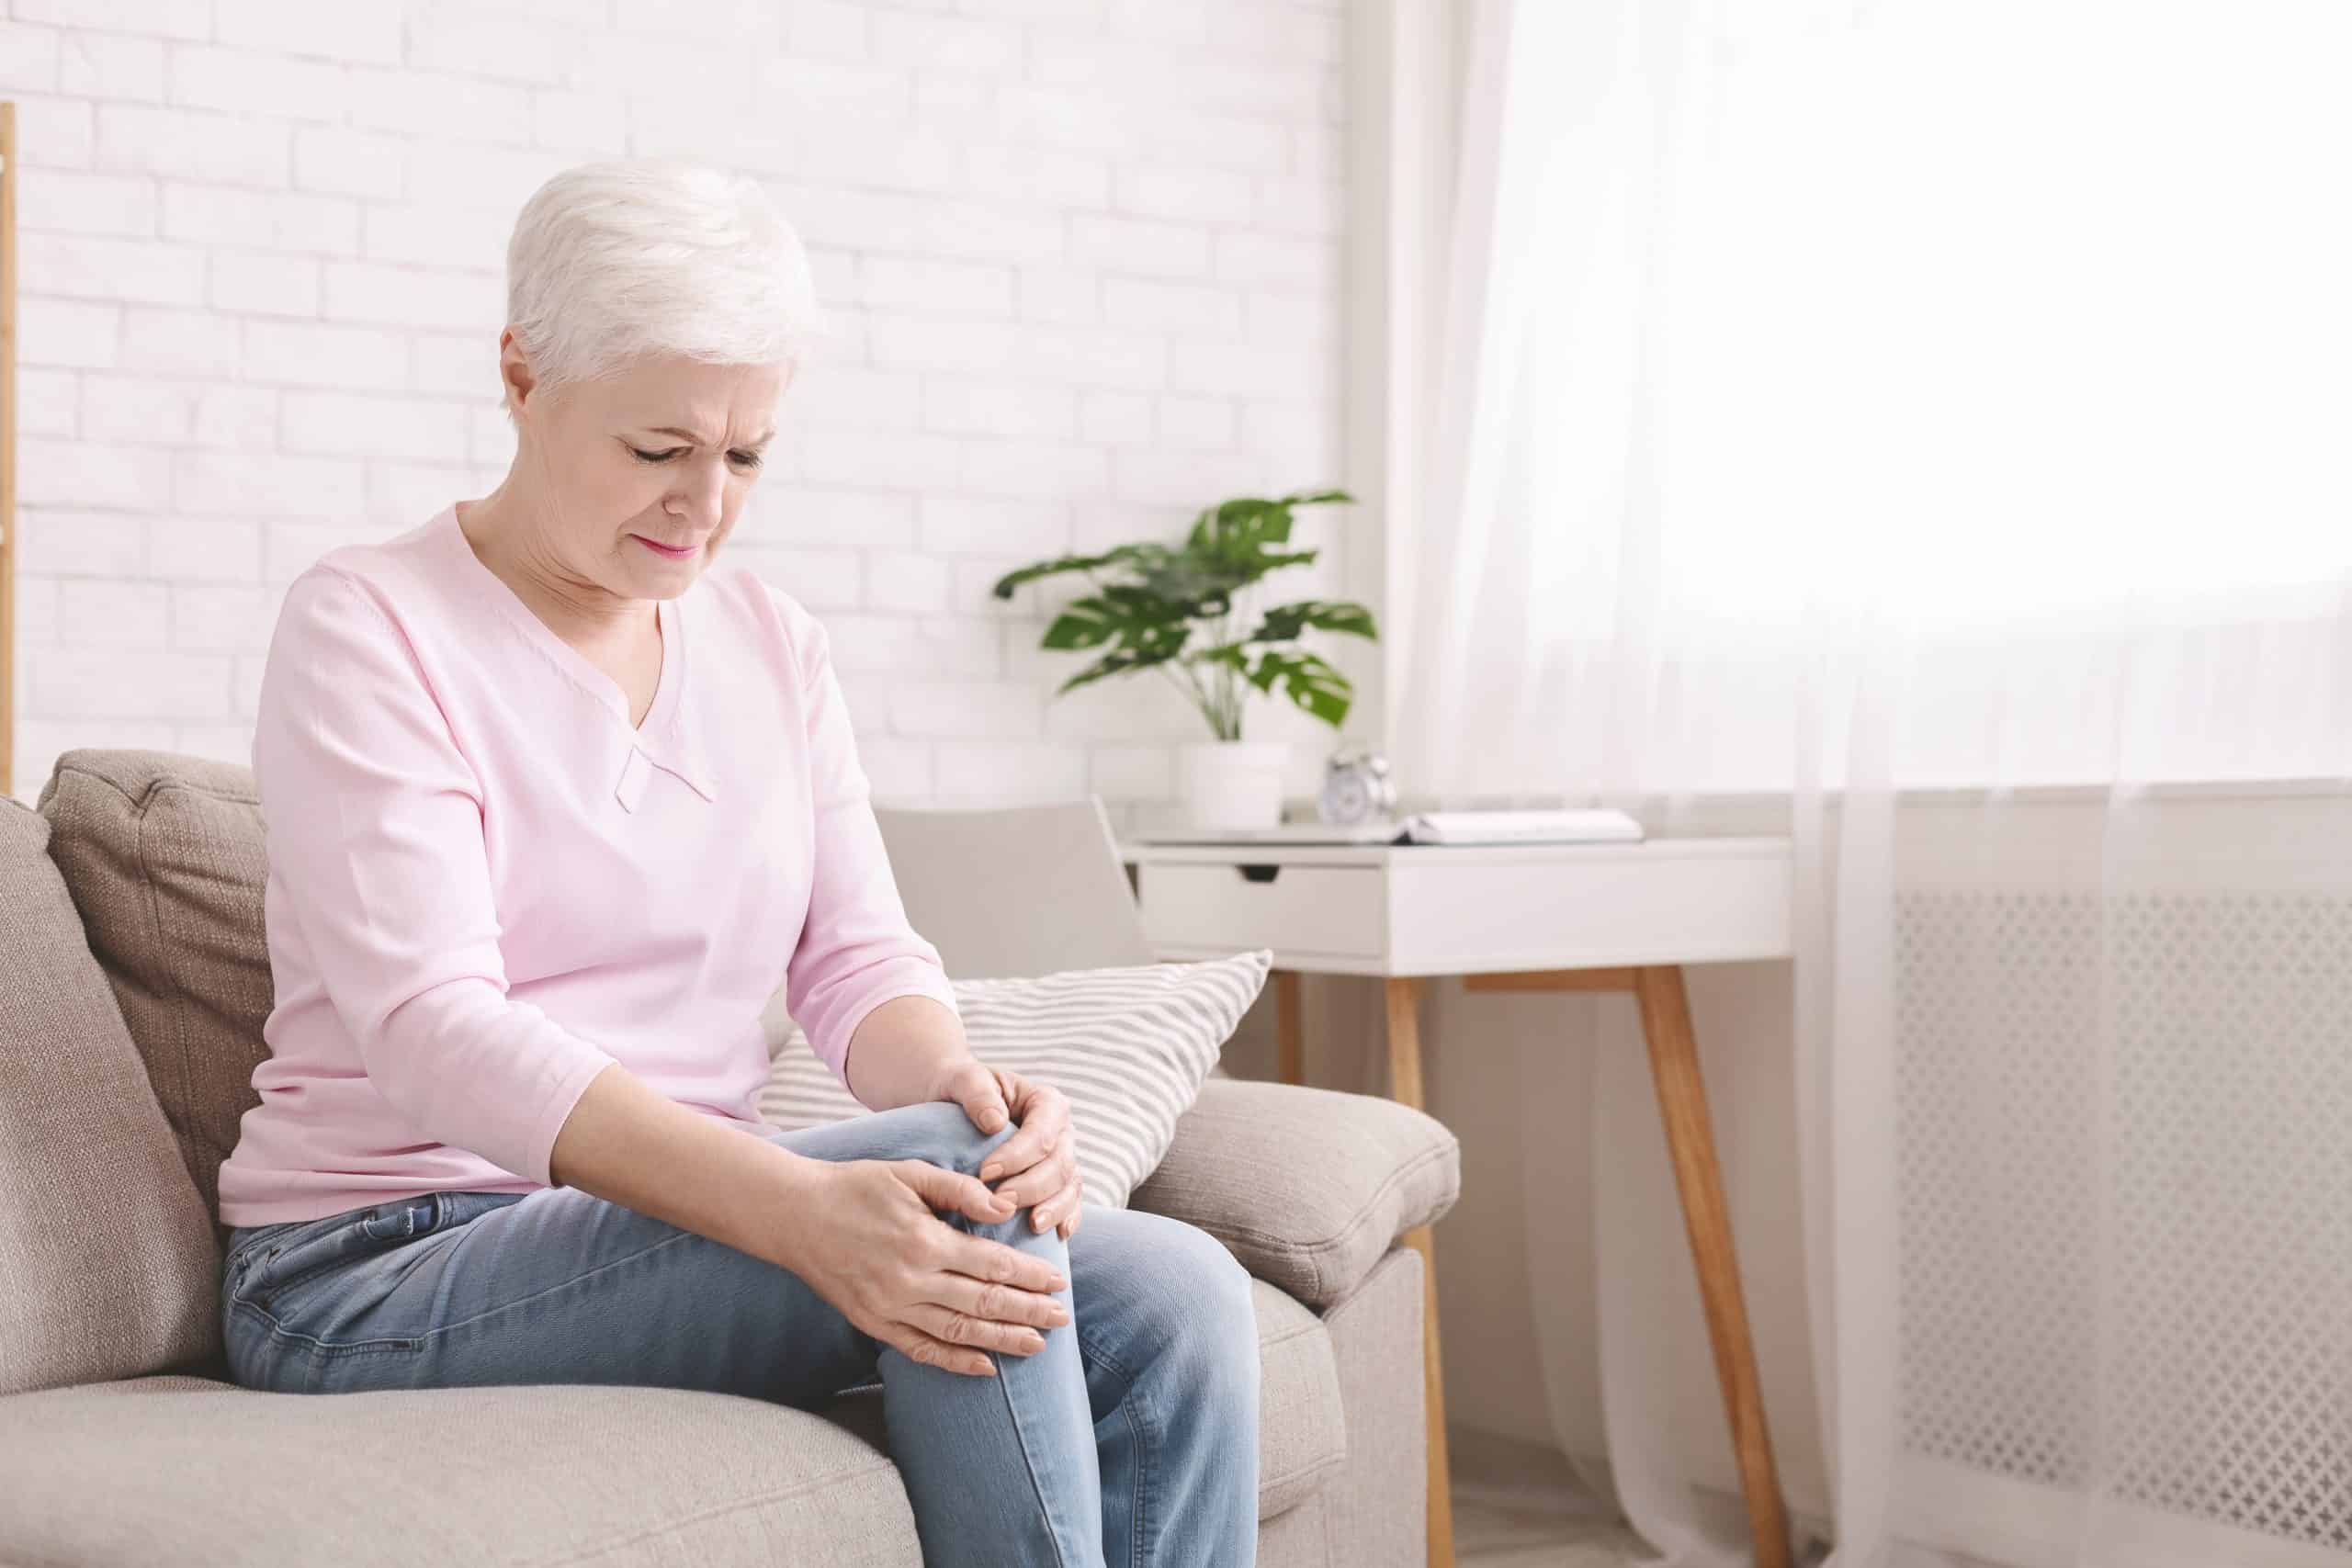 simptomi artroze prsta i forum za liječenje zglobovi mame pregleda